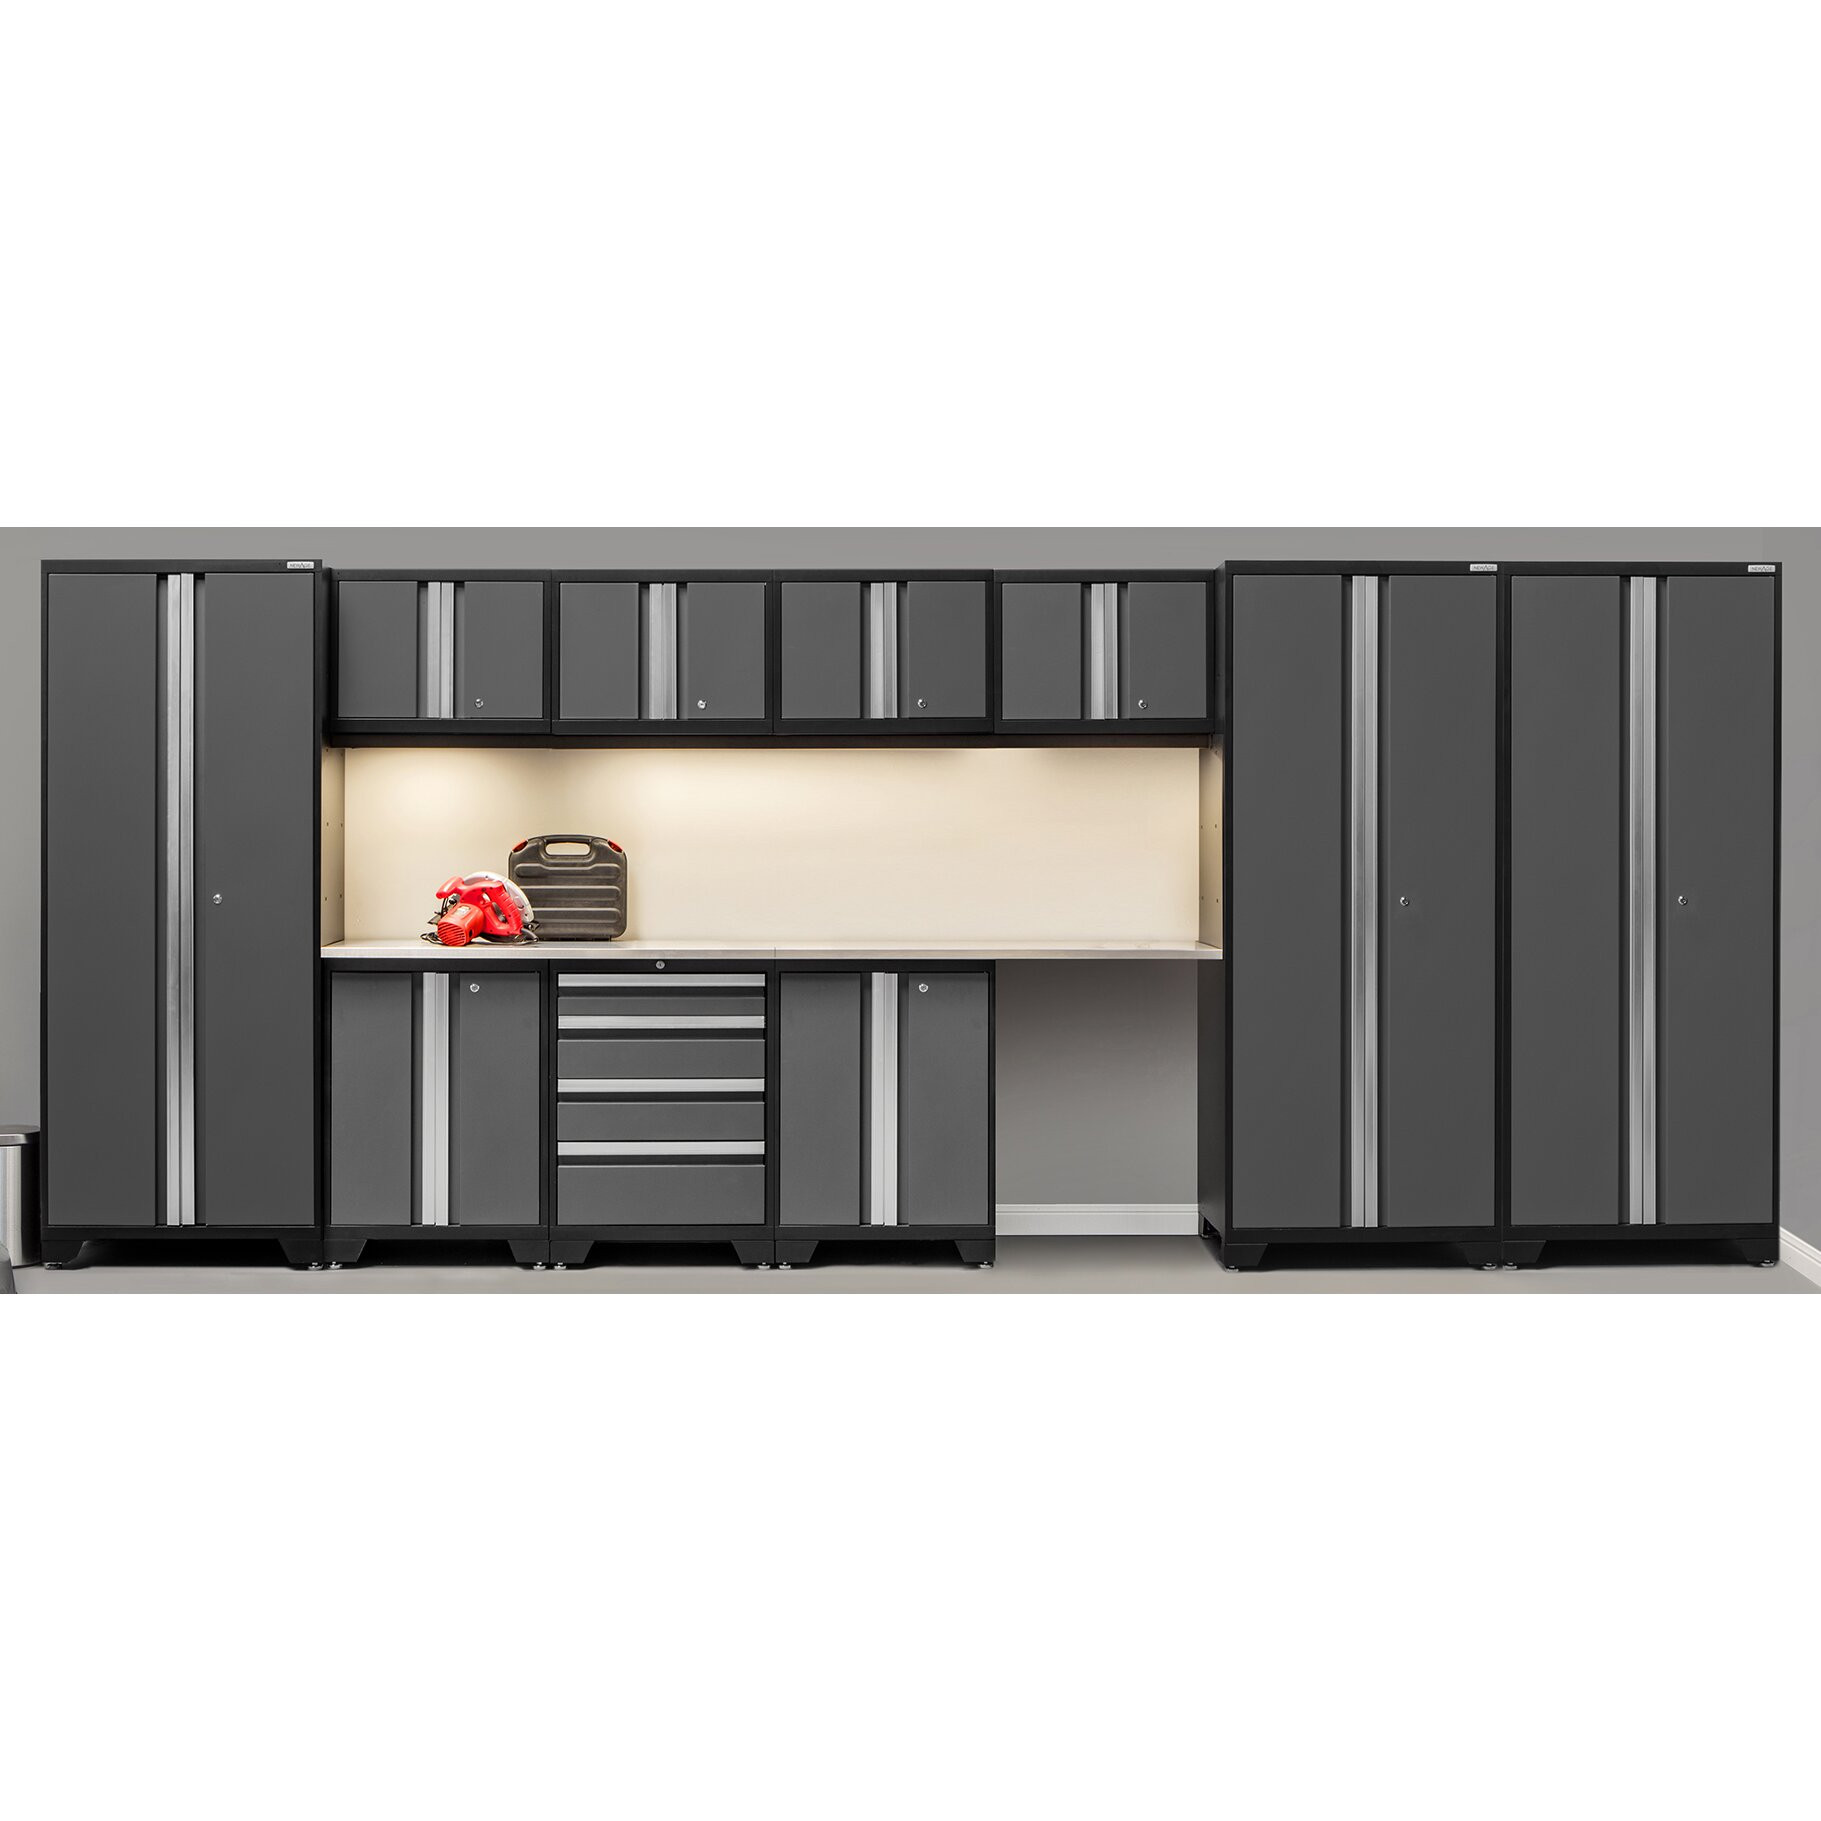 Garage Organizer Cabinet
 NewAge Products Bold 3 0 Series 12 Piece Garage Storage